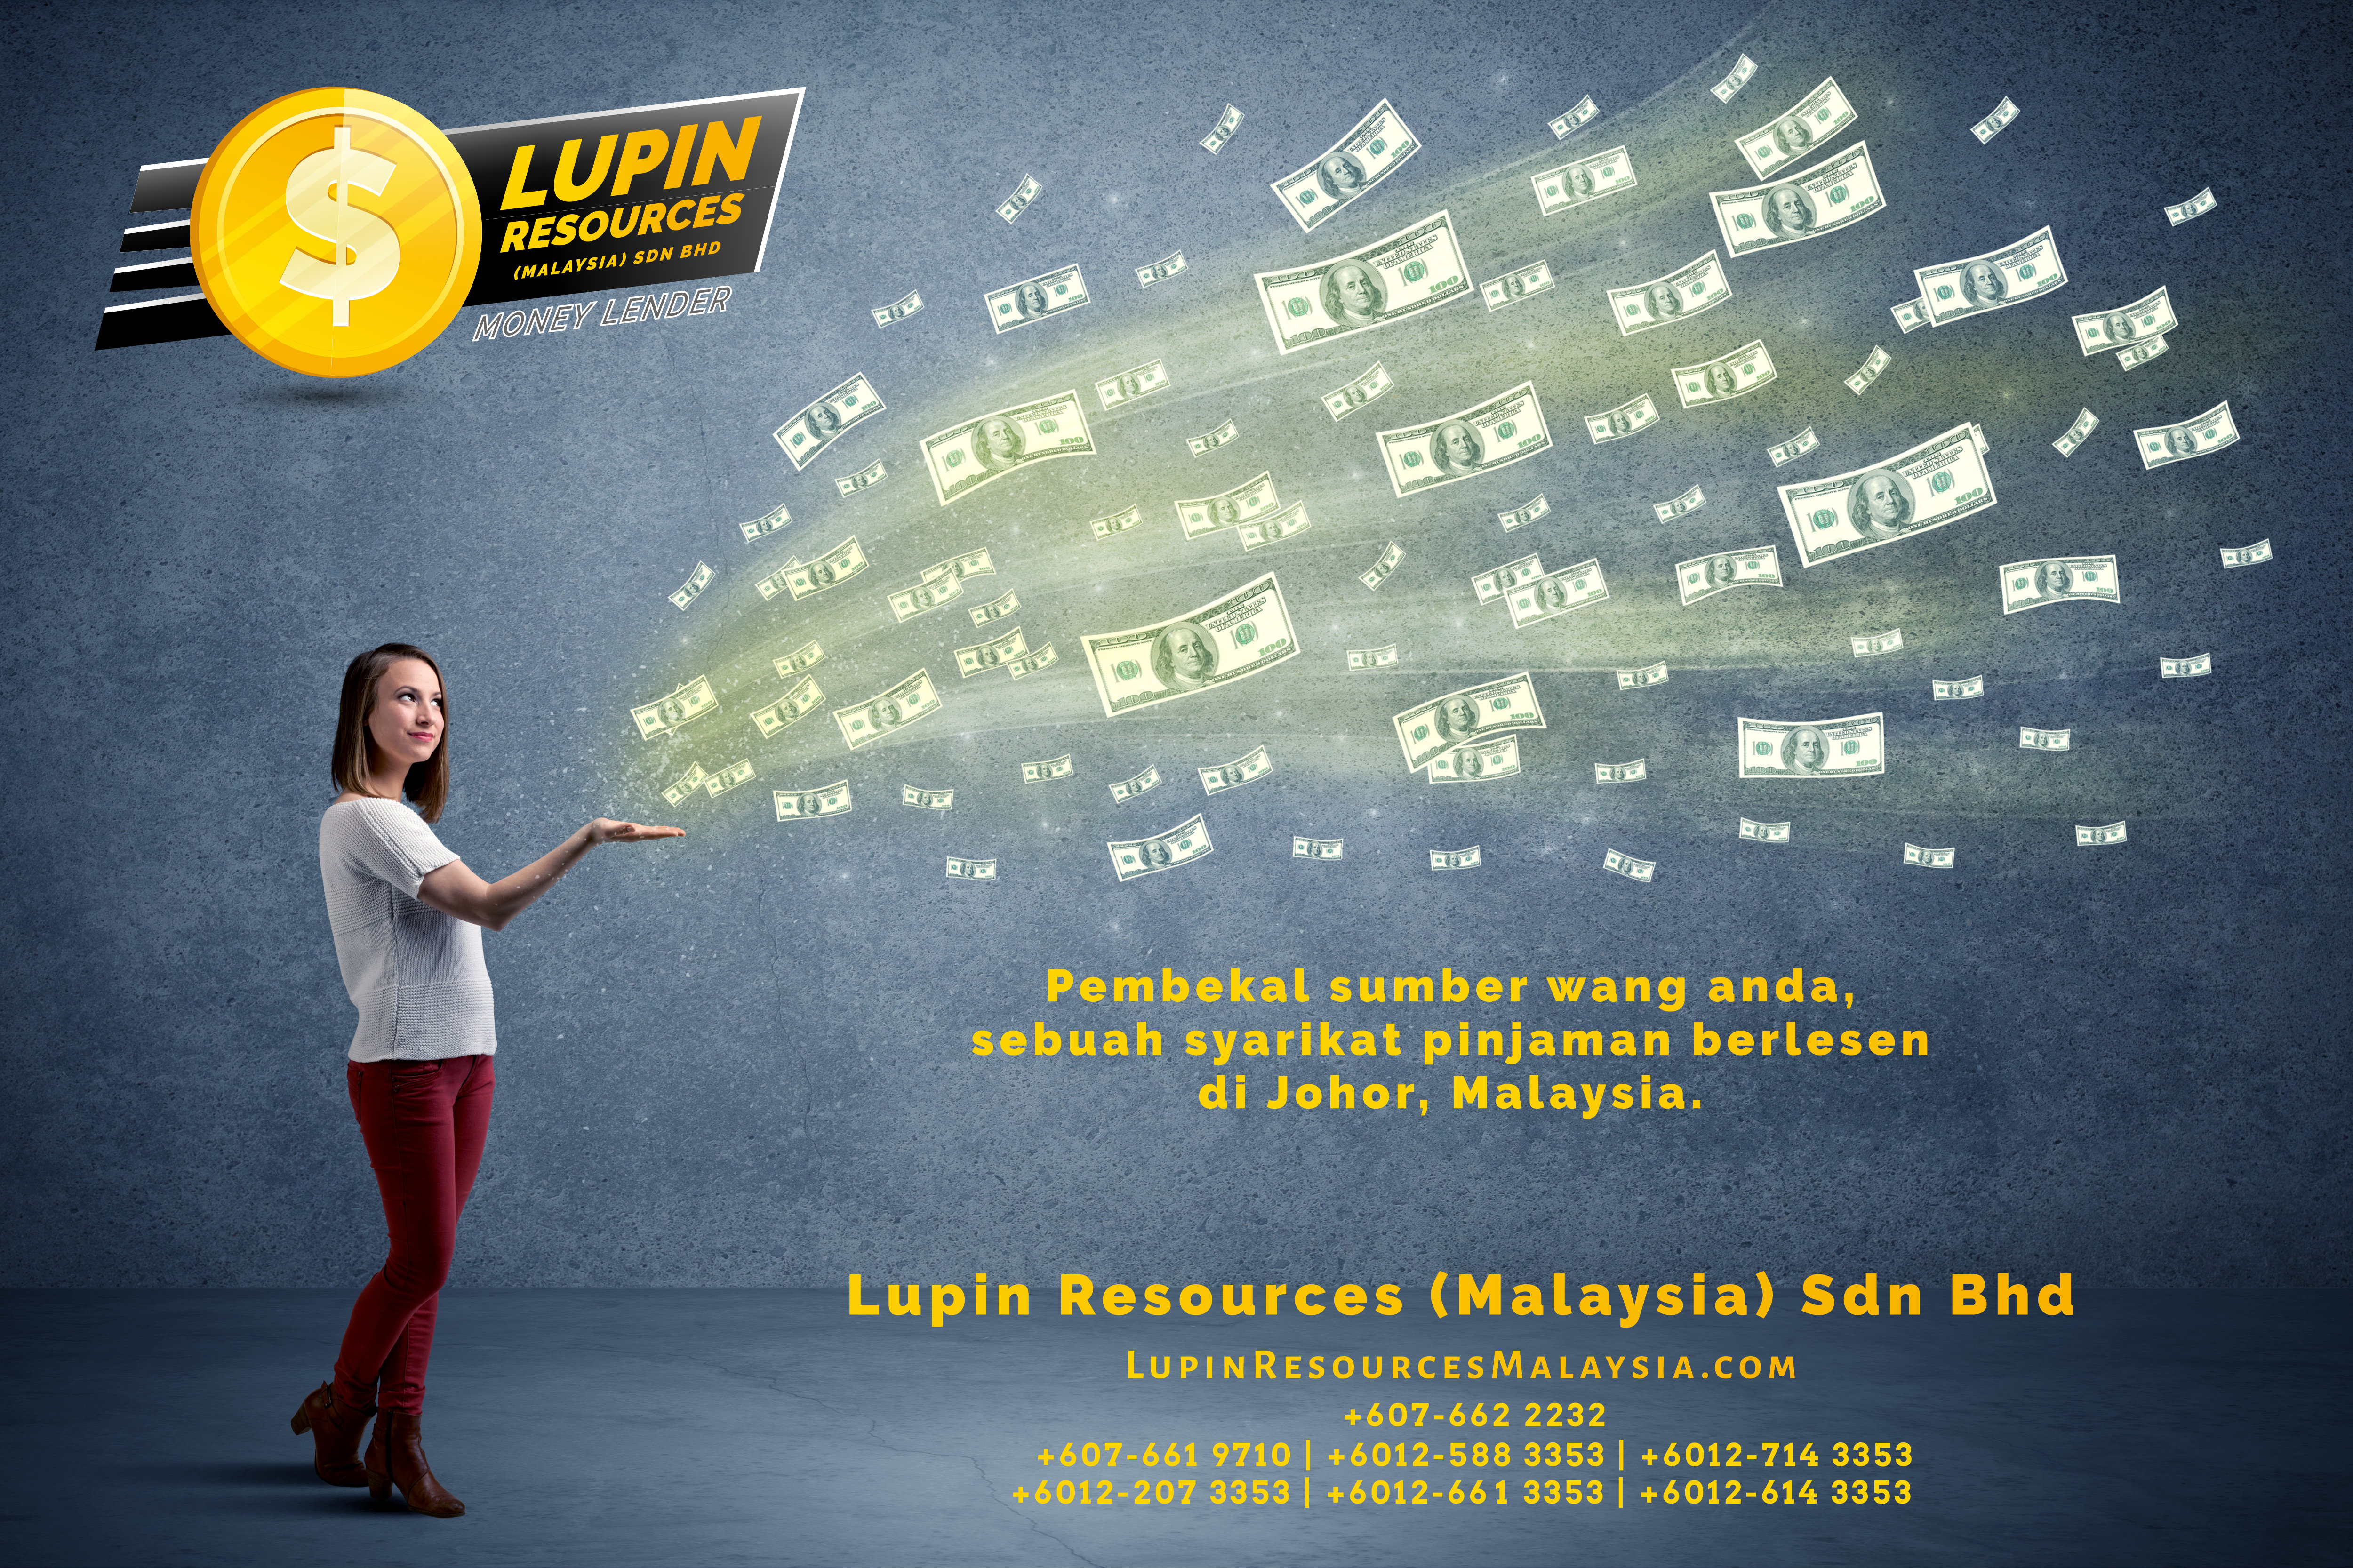 Johor Syarikat Pinjaman Berlesen Lupin Resources Malaysia SDN BHD Pembekal Sumber Wang Anda Kulai Johor Bahru Johor Malaysia Pinjaman Perniagaan Pinjaman Peribadi A01-51